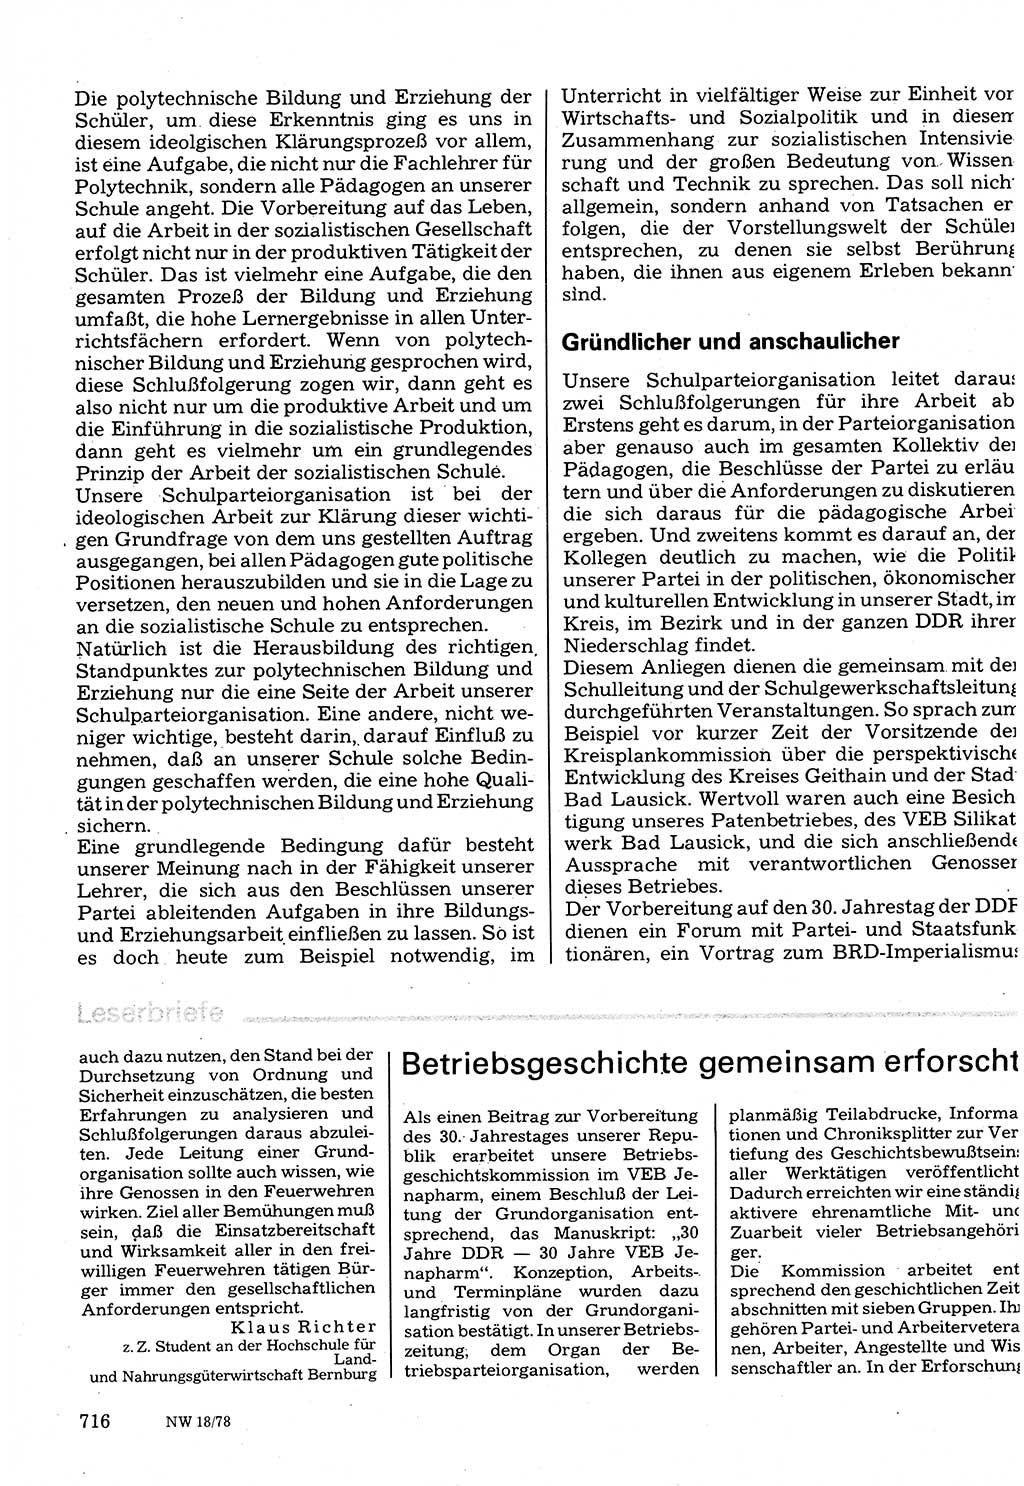 Neuer Weg (NW), Organ des Zentralkomitees (ZK) der SED (Sozialistische Einheitspartei Deutschlands) für Fragen des Parteilebens, 33. Jahrgang [Deutsche Demokratische Republik (DDR)] 1978, Seite 716 (NW ZK SED DDR 1978, S. 716)